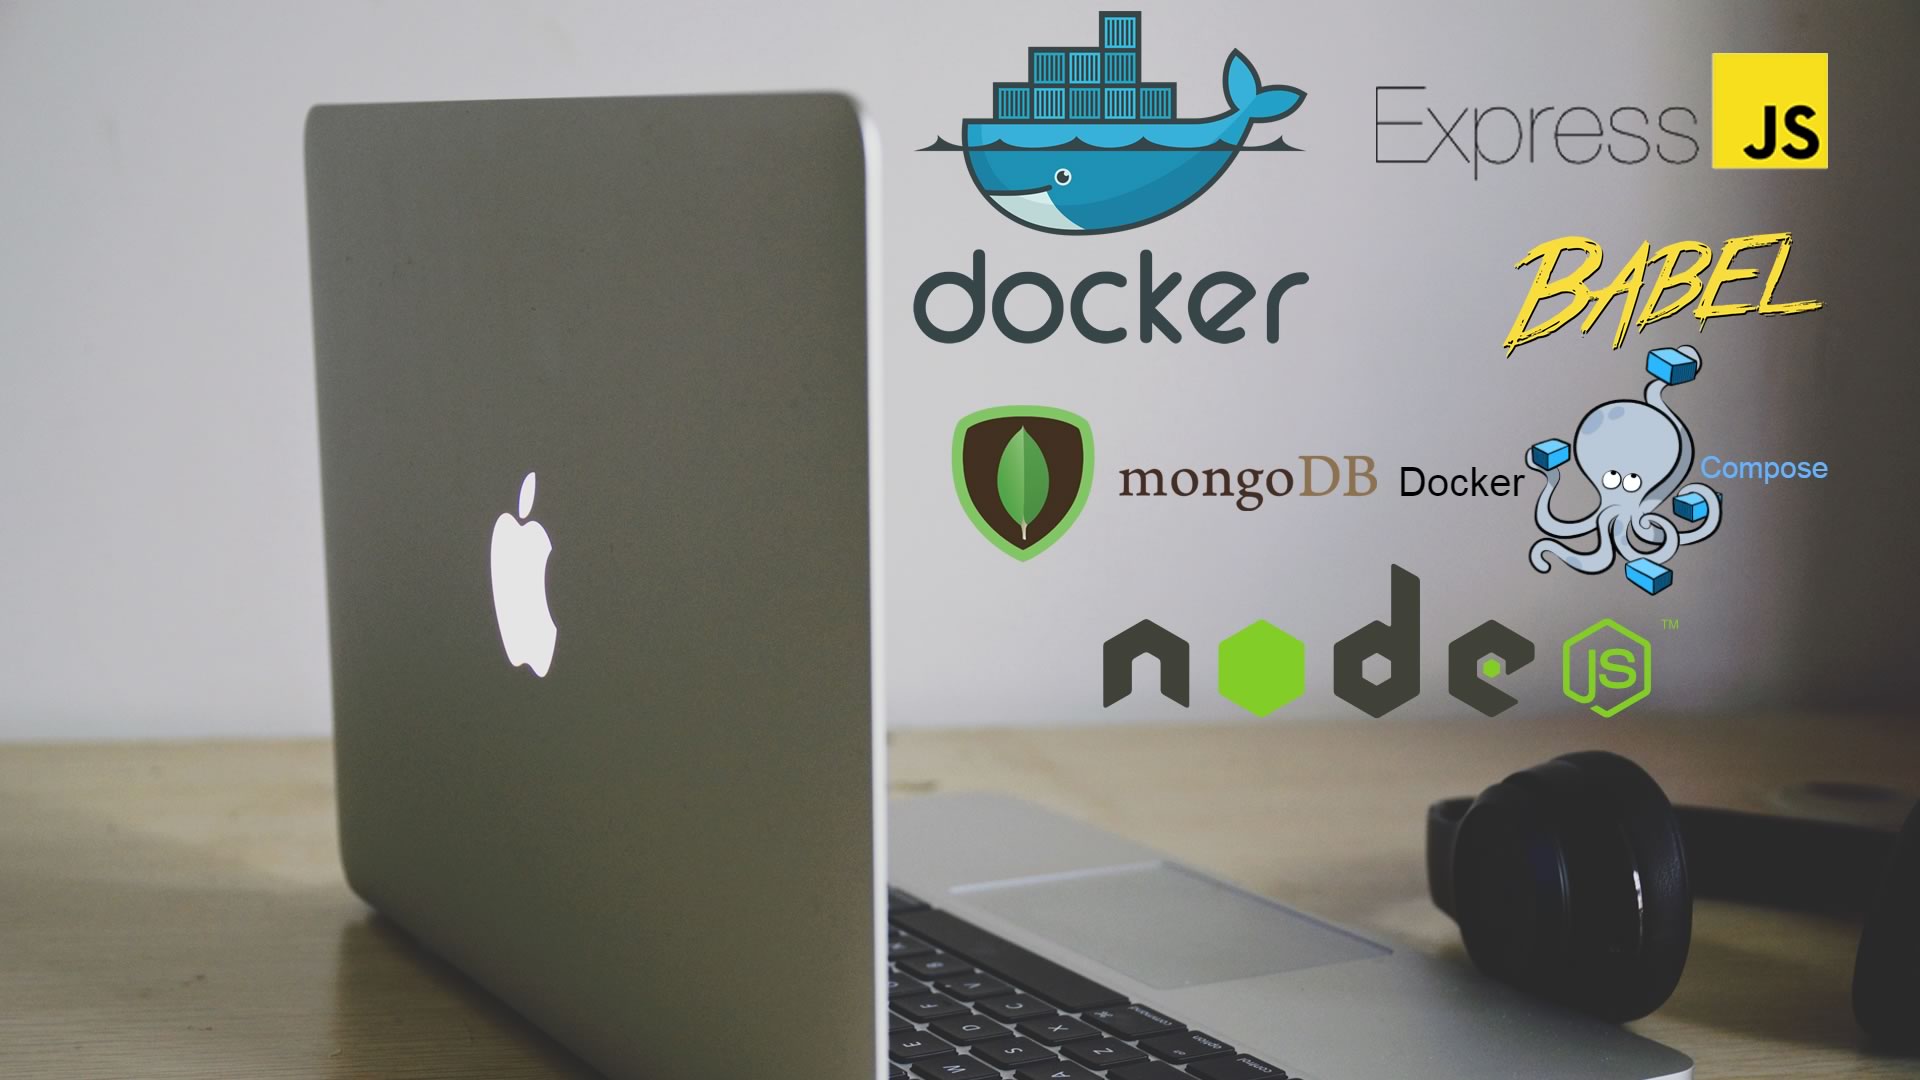 Criando uma aplicação com NodeJS, usando Express, Mongo, Docker e Babel